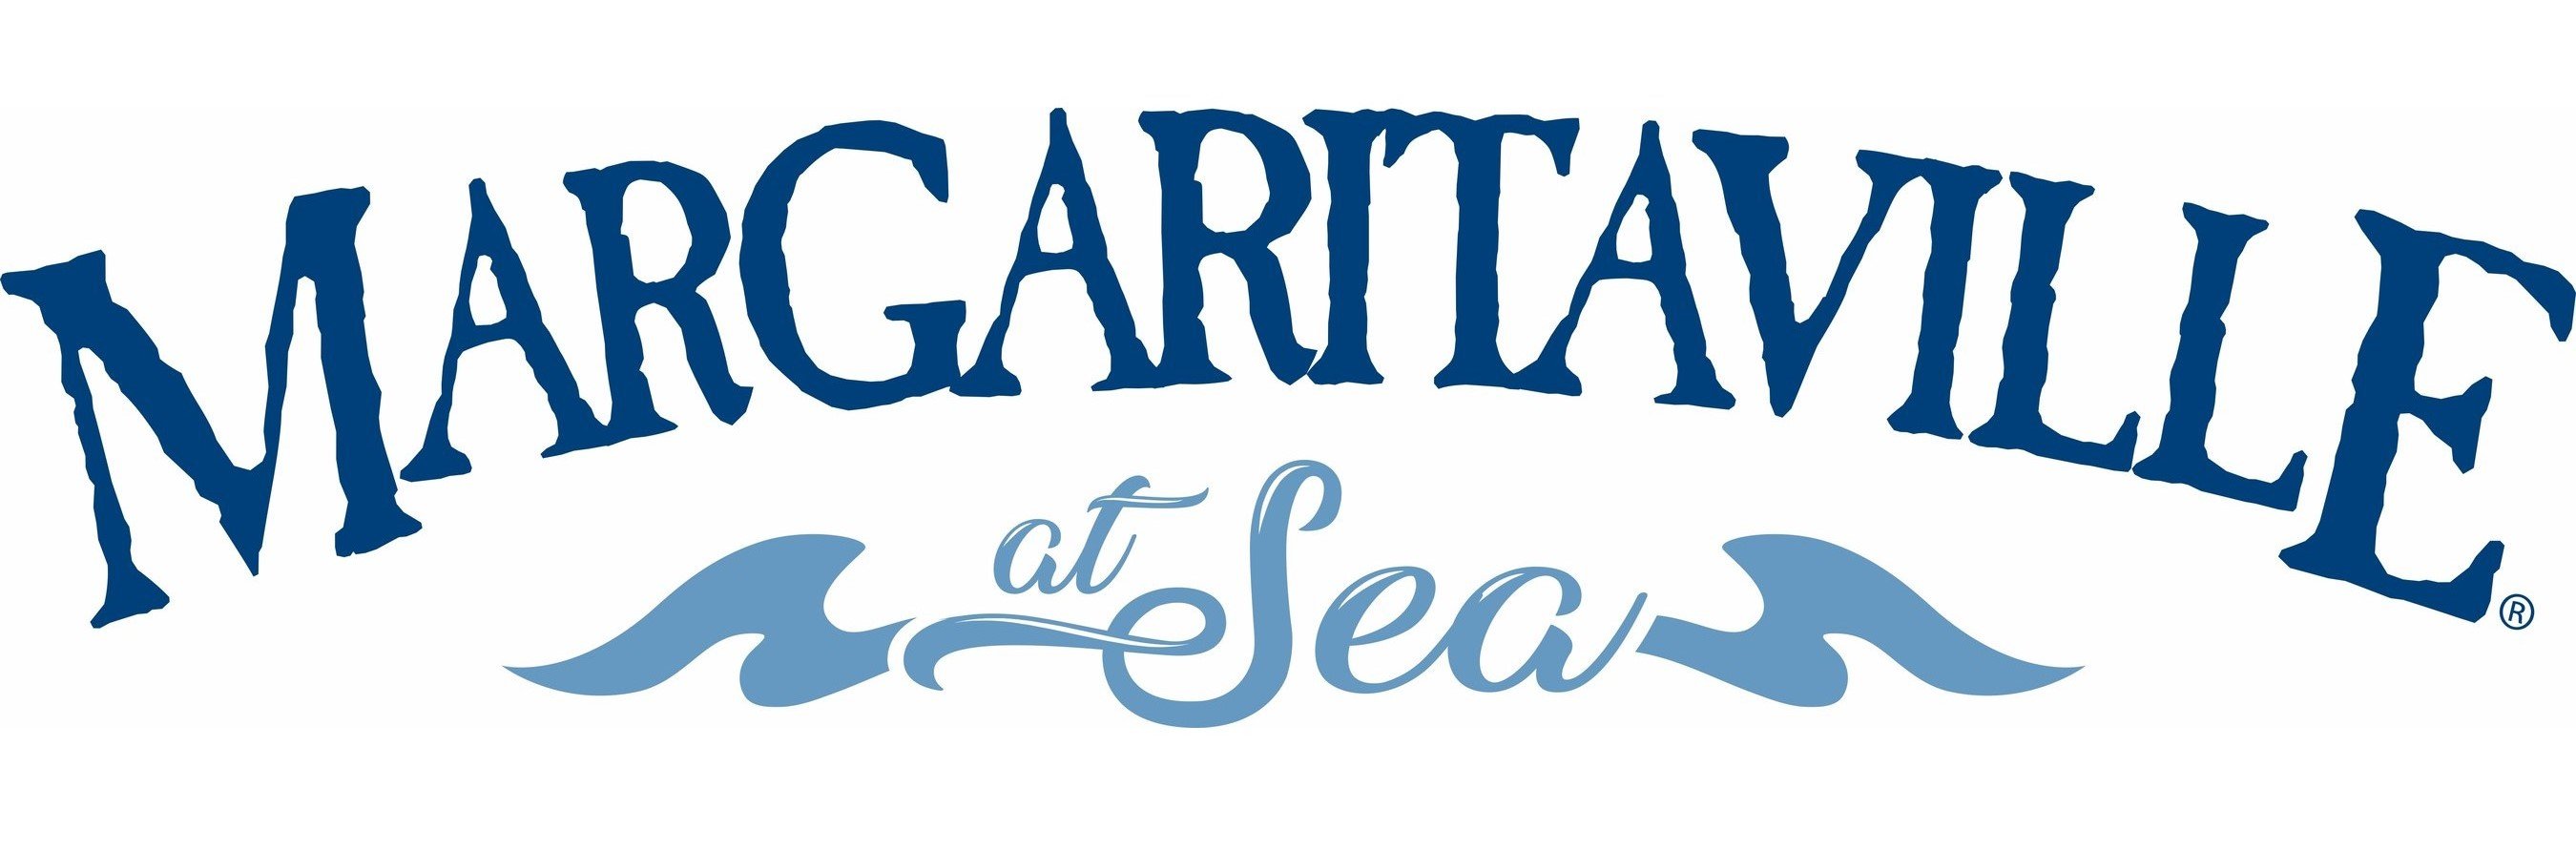 Margaritaville_at_Sea_Logo image